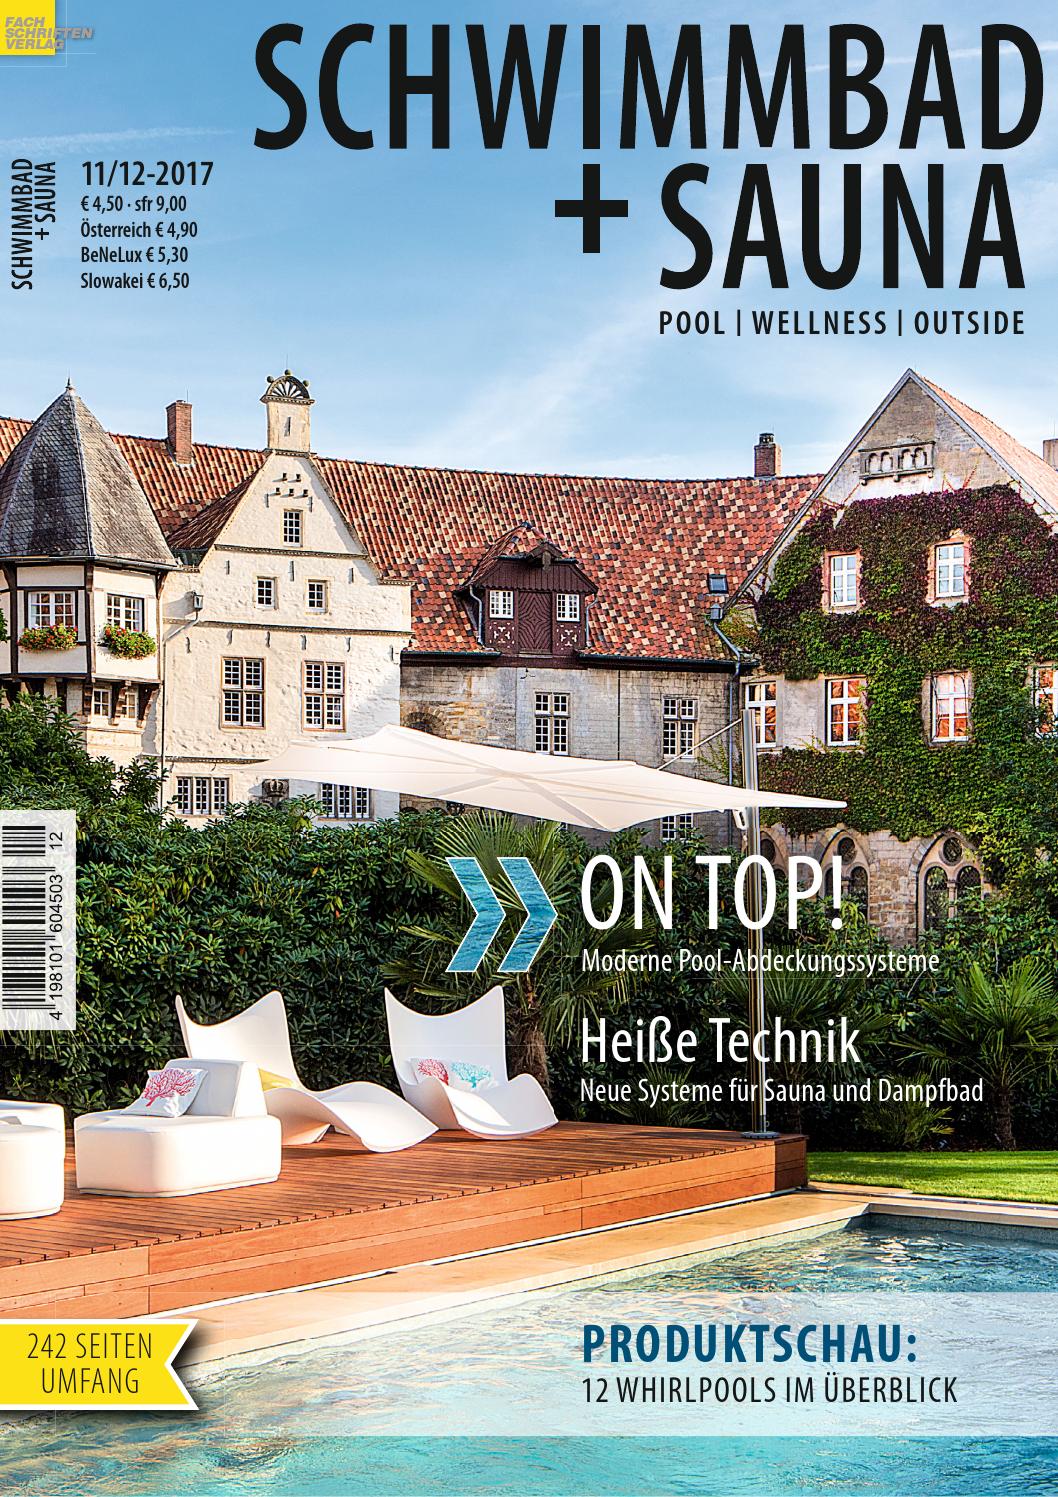 Moderne Gartenbepflanzung Einzigartig Schwimmbad Sauna 11 12 2017 by Fachschriften Verlag issuu